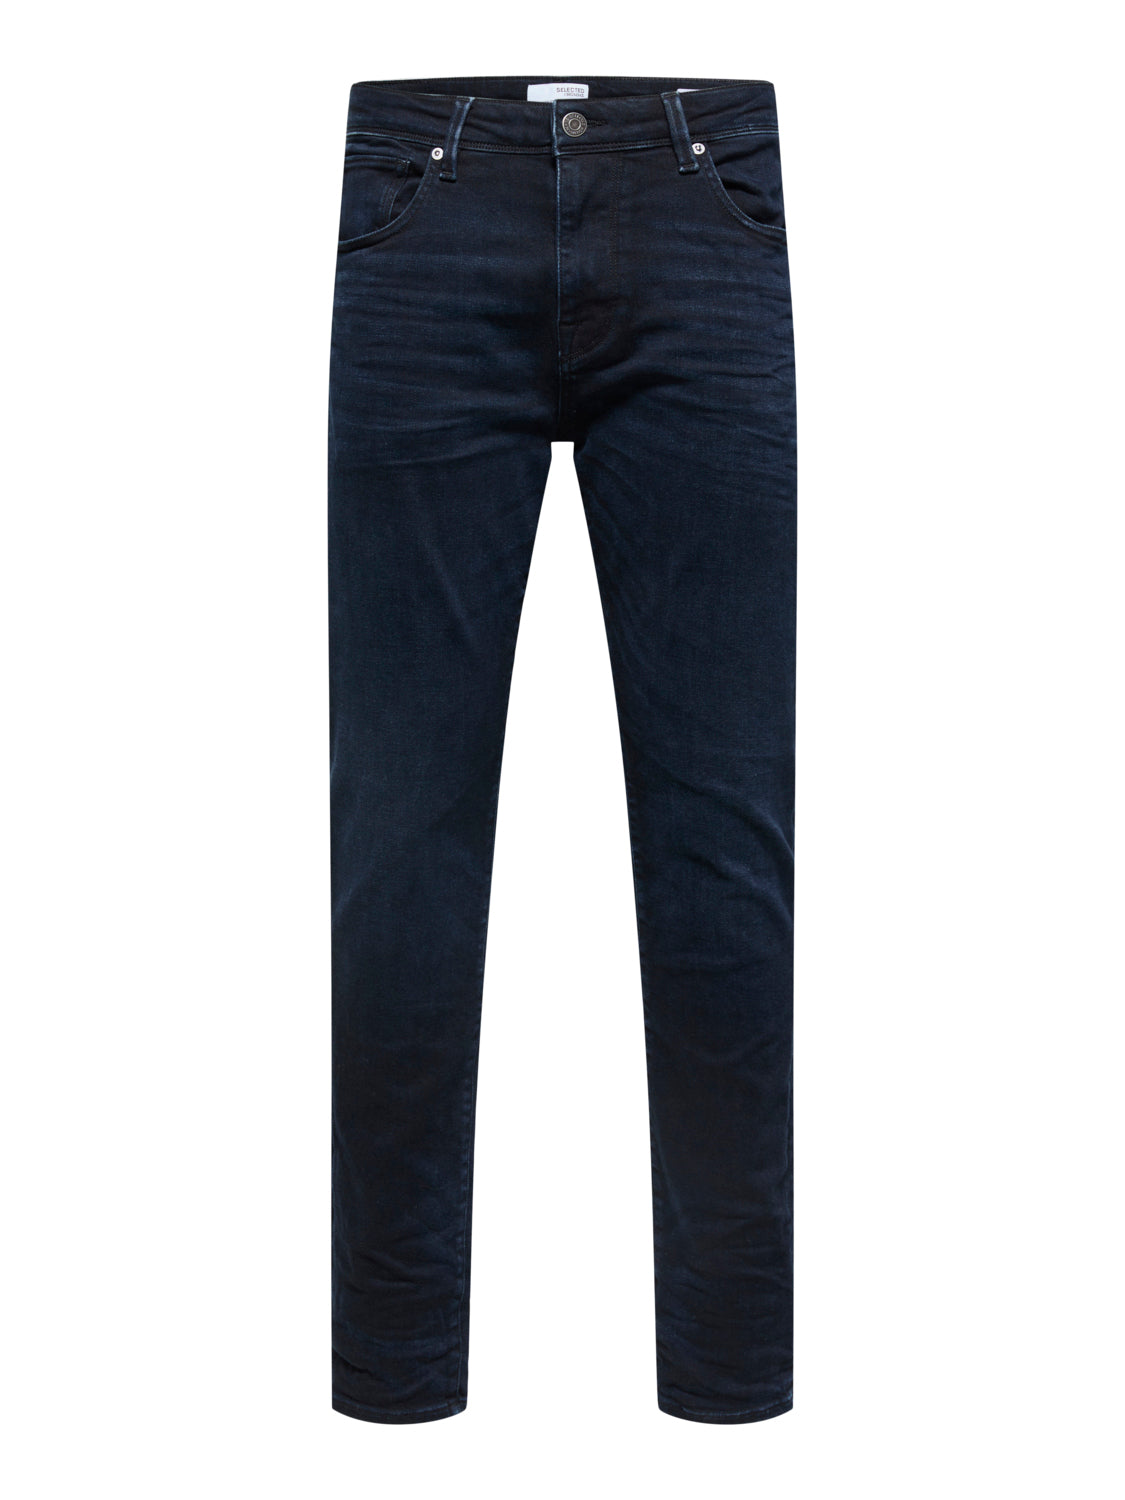 SELECTED HOMME - 175-SLIM Jeans - Blue Black Denim